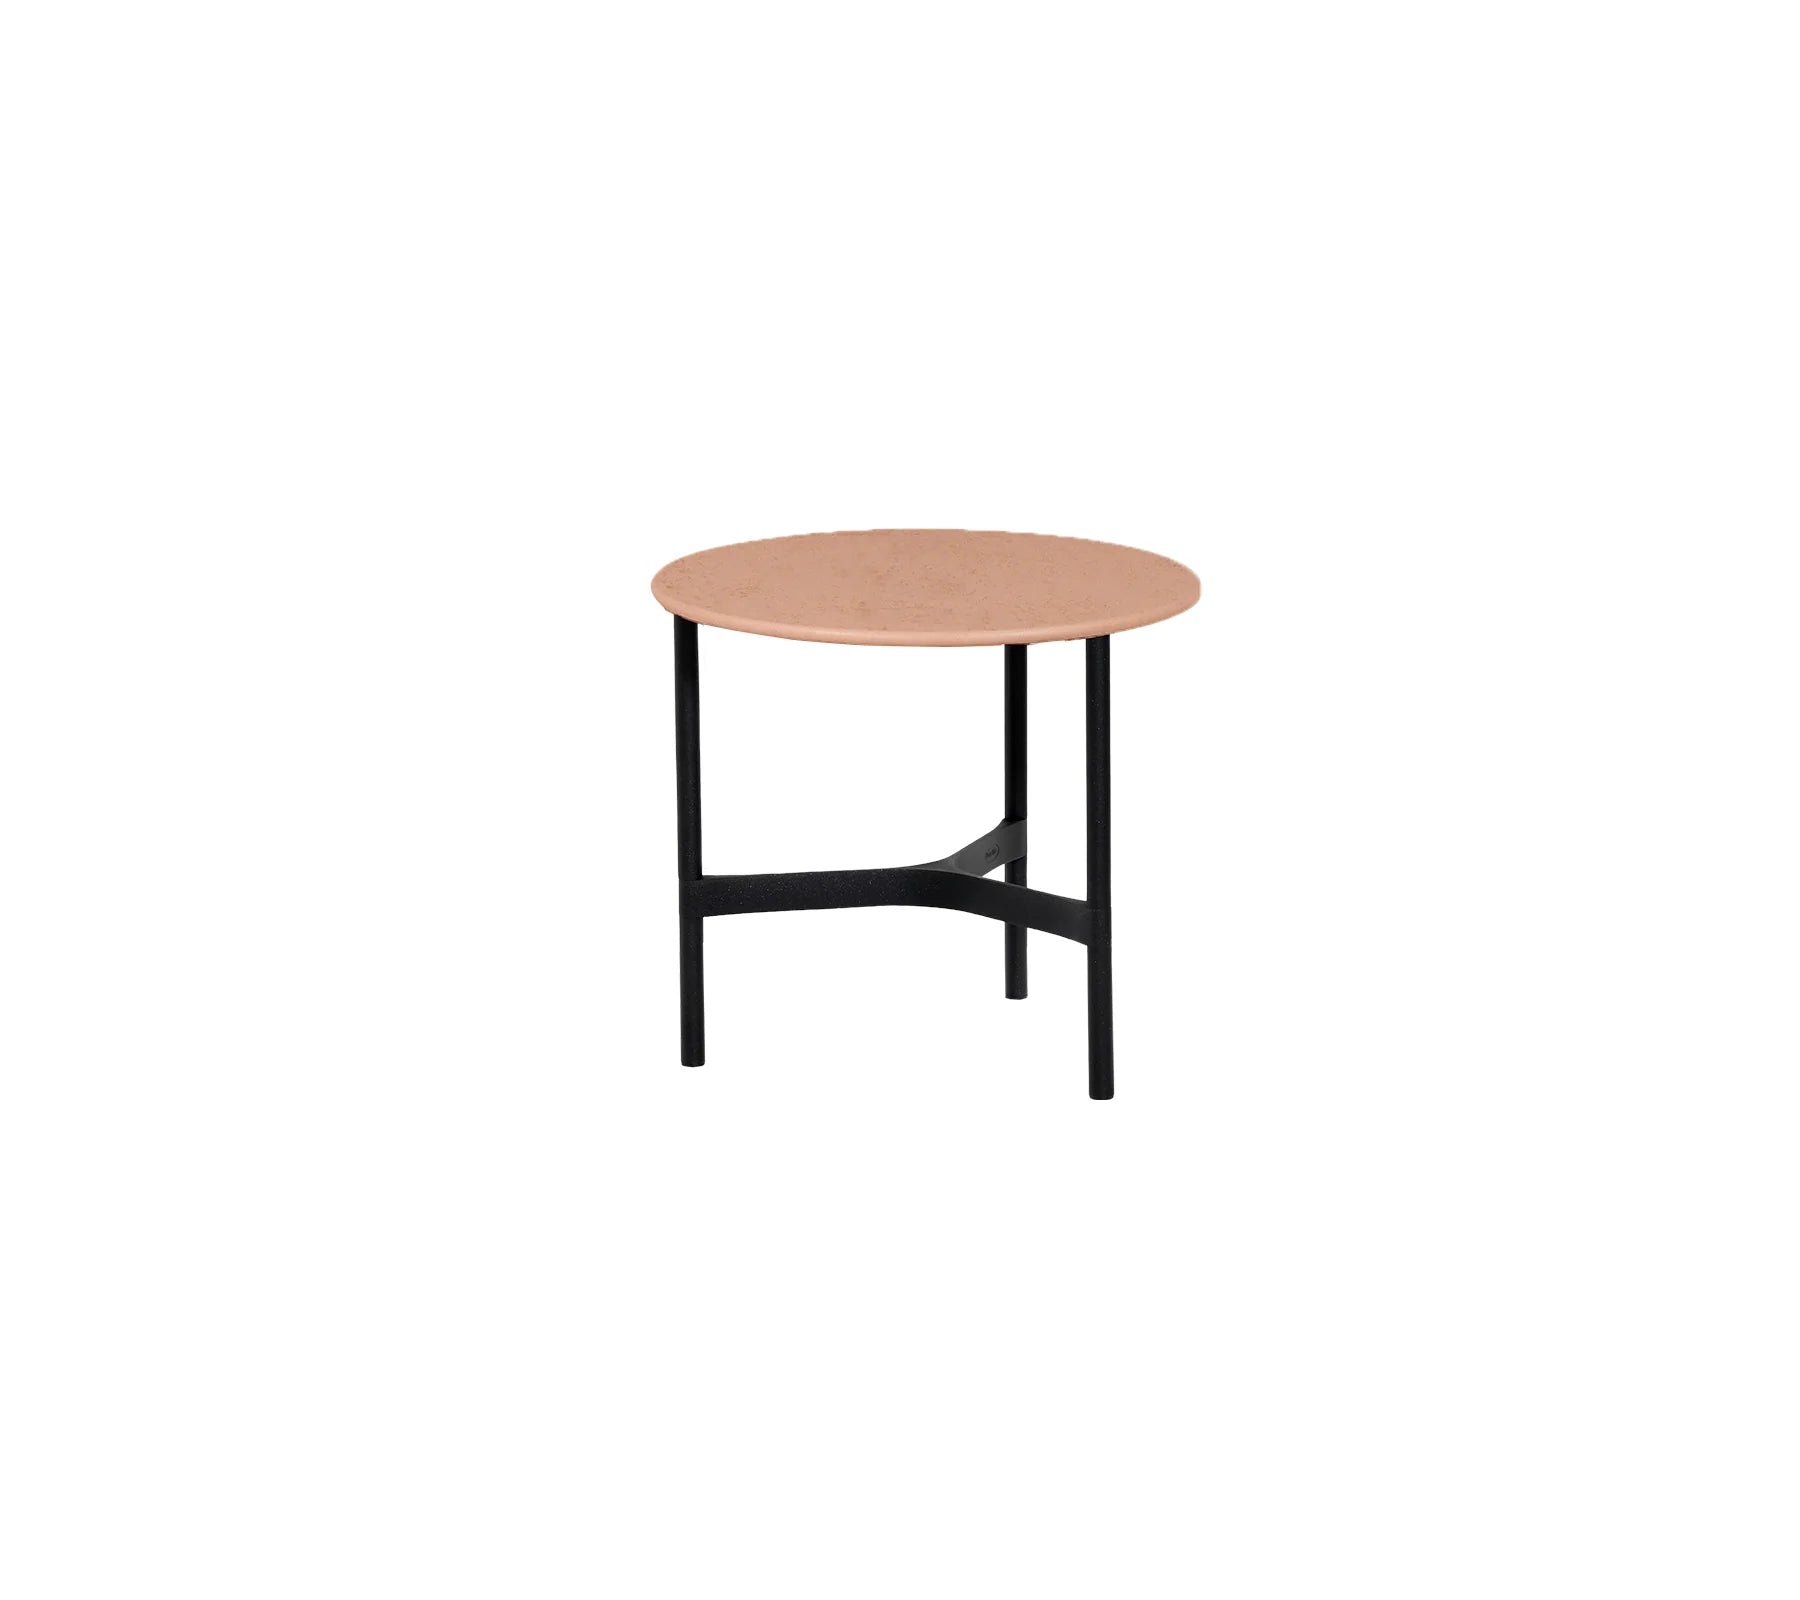 Terracotta Ceramic Table Top